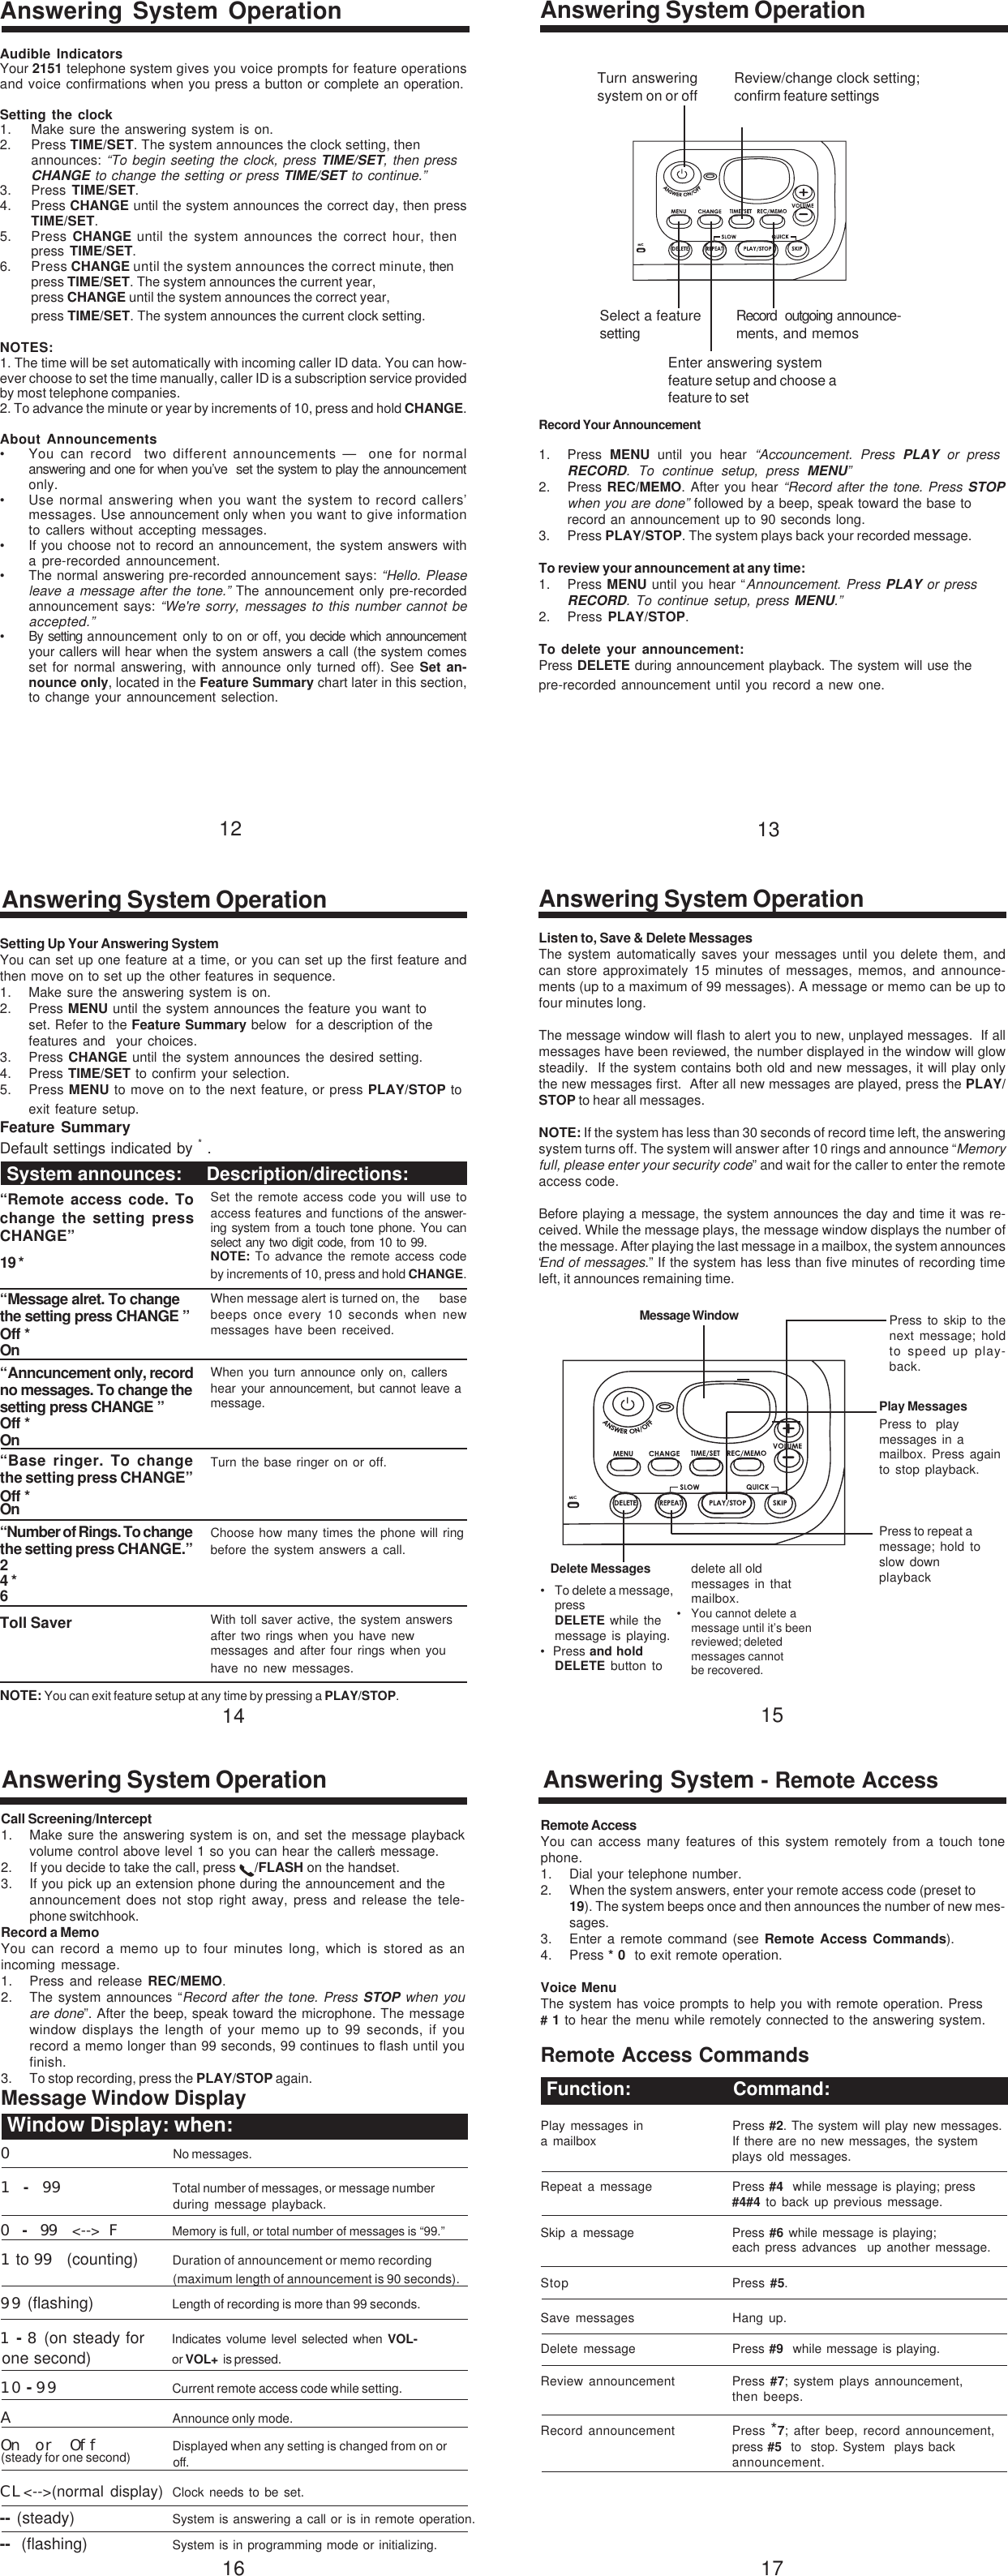 Page 3 of 6 - VTech T2151 91-00270-020-000.2151.R0 User Manual  To The A481a7ec-a103-4a0b-b338-efb4586a1883